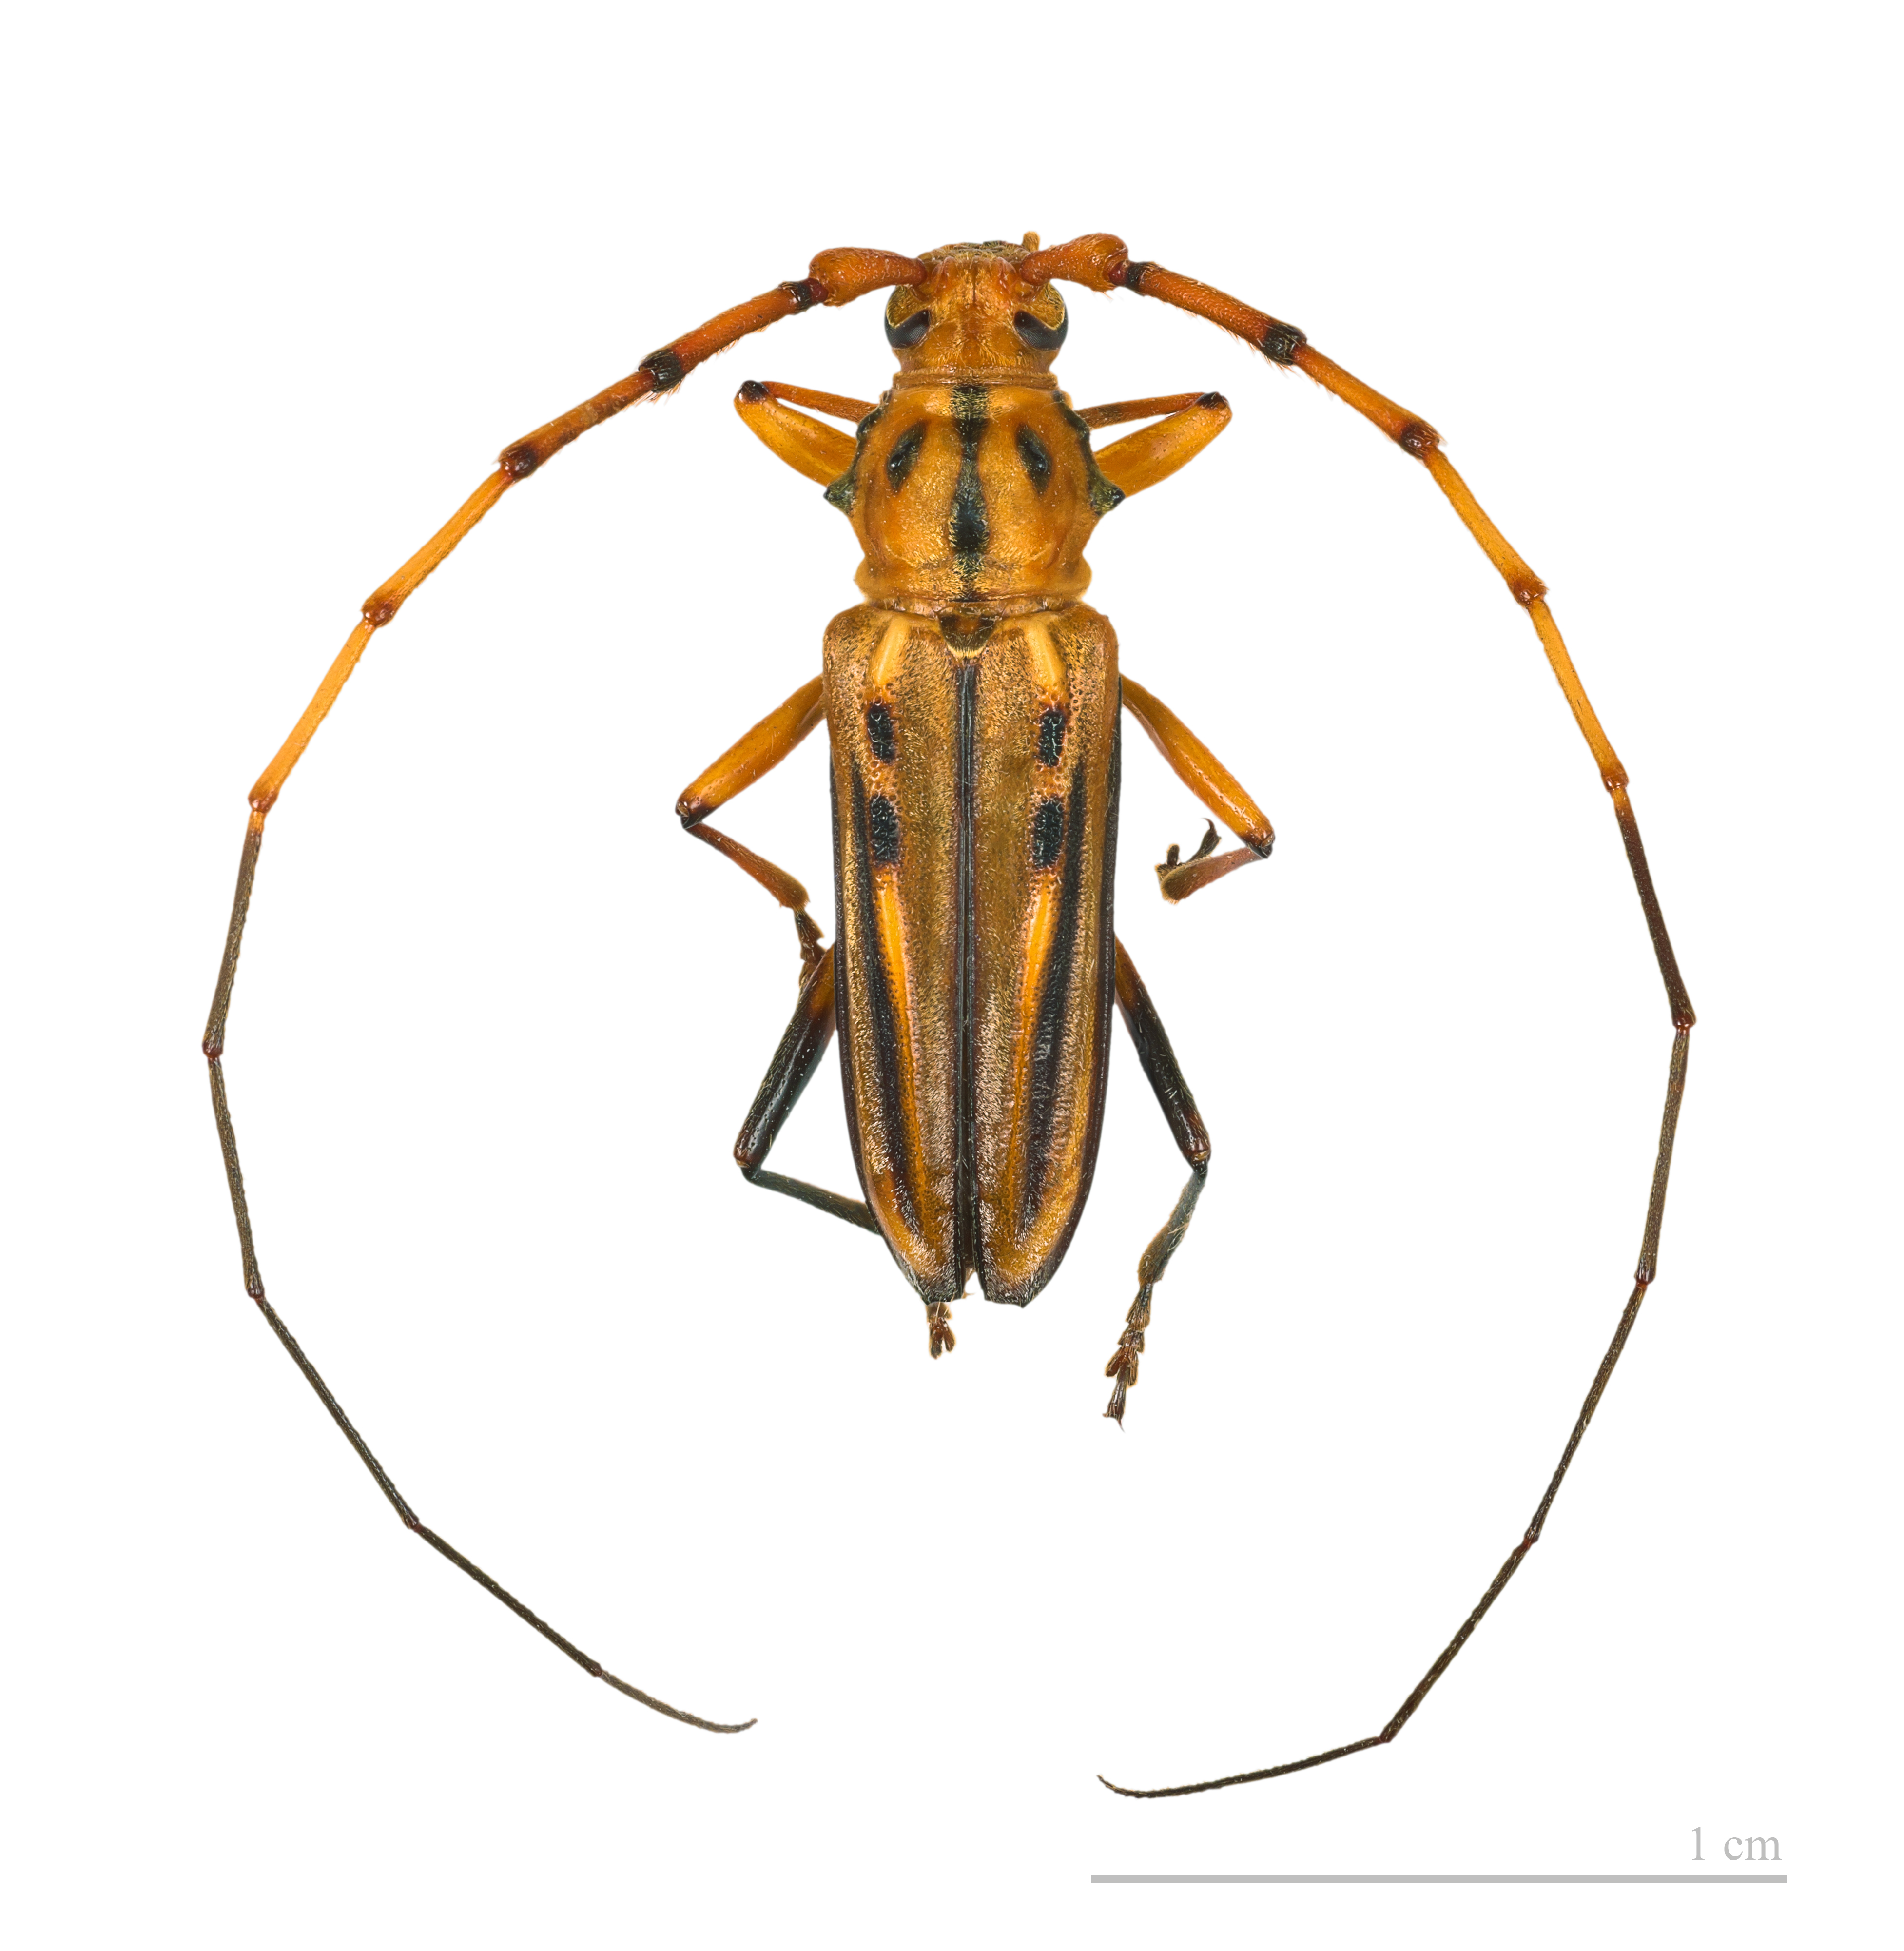 Ceragenia bicornis MHNT male 4